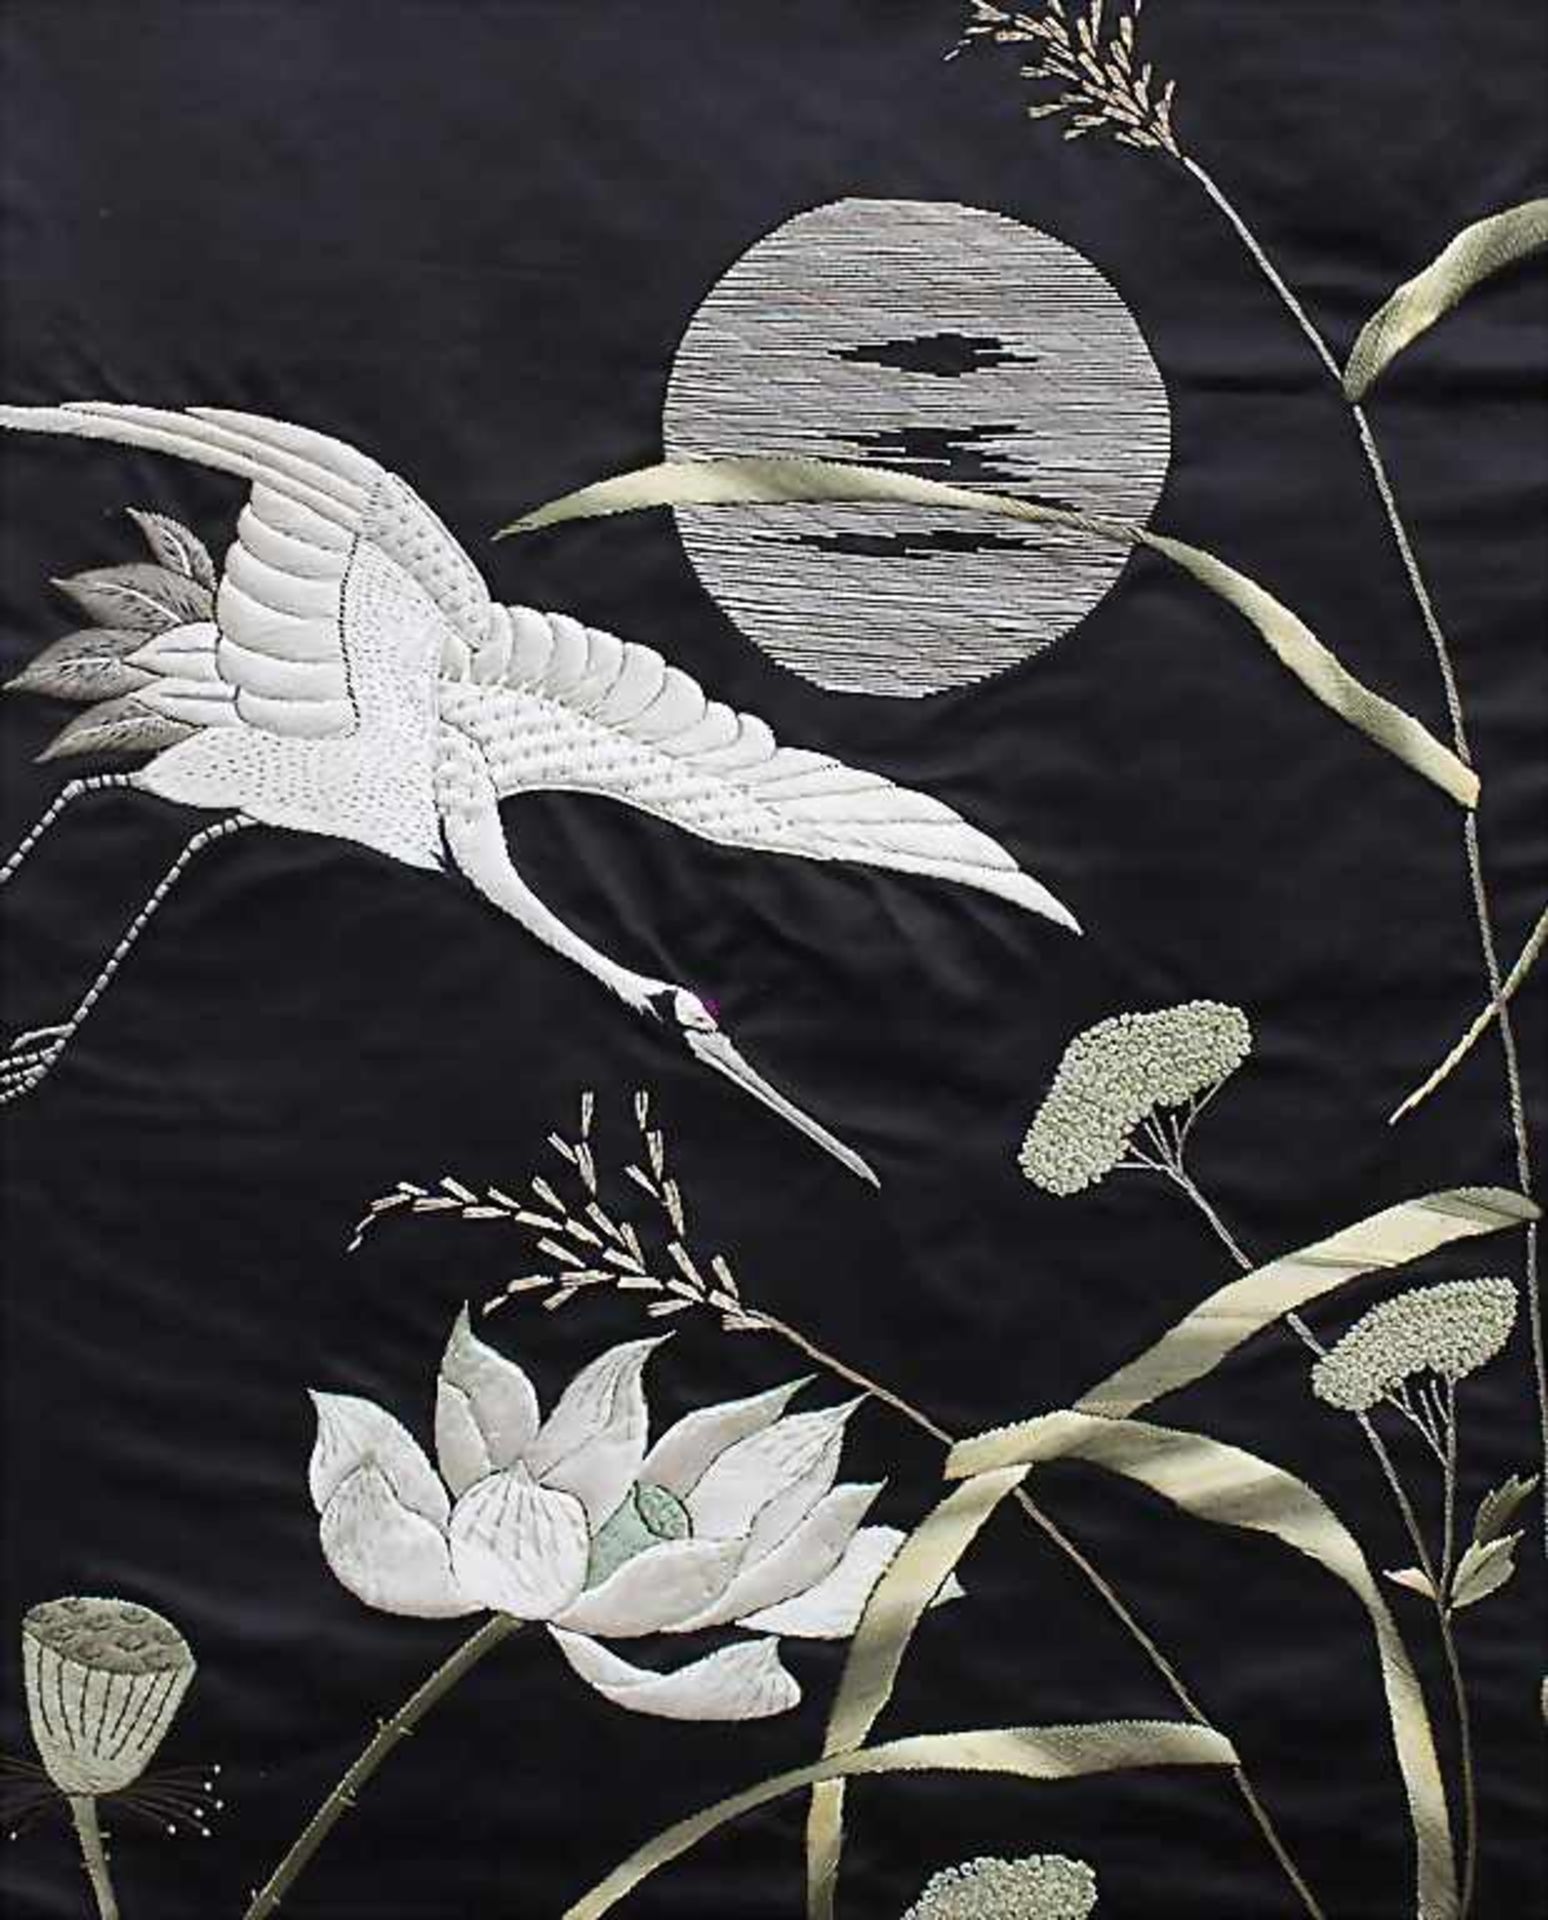 Seiden-Wandbehang 'Kranich'/ A silk wall hanging 'Crane', China, 1. Hälfte 20. Jh.Mat - Image 3 of 3